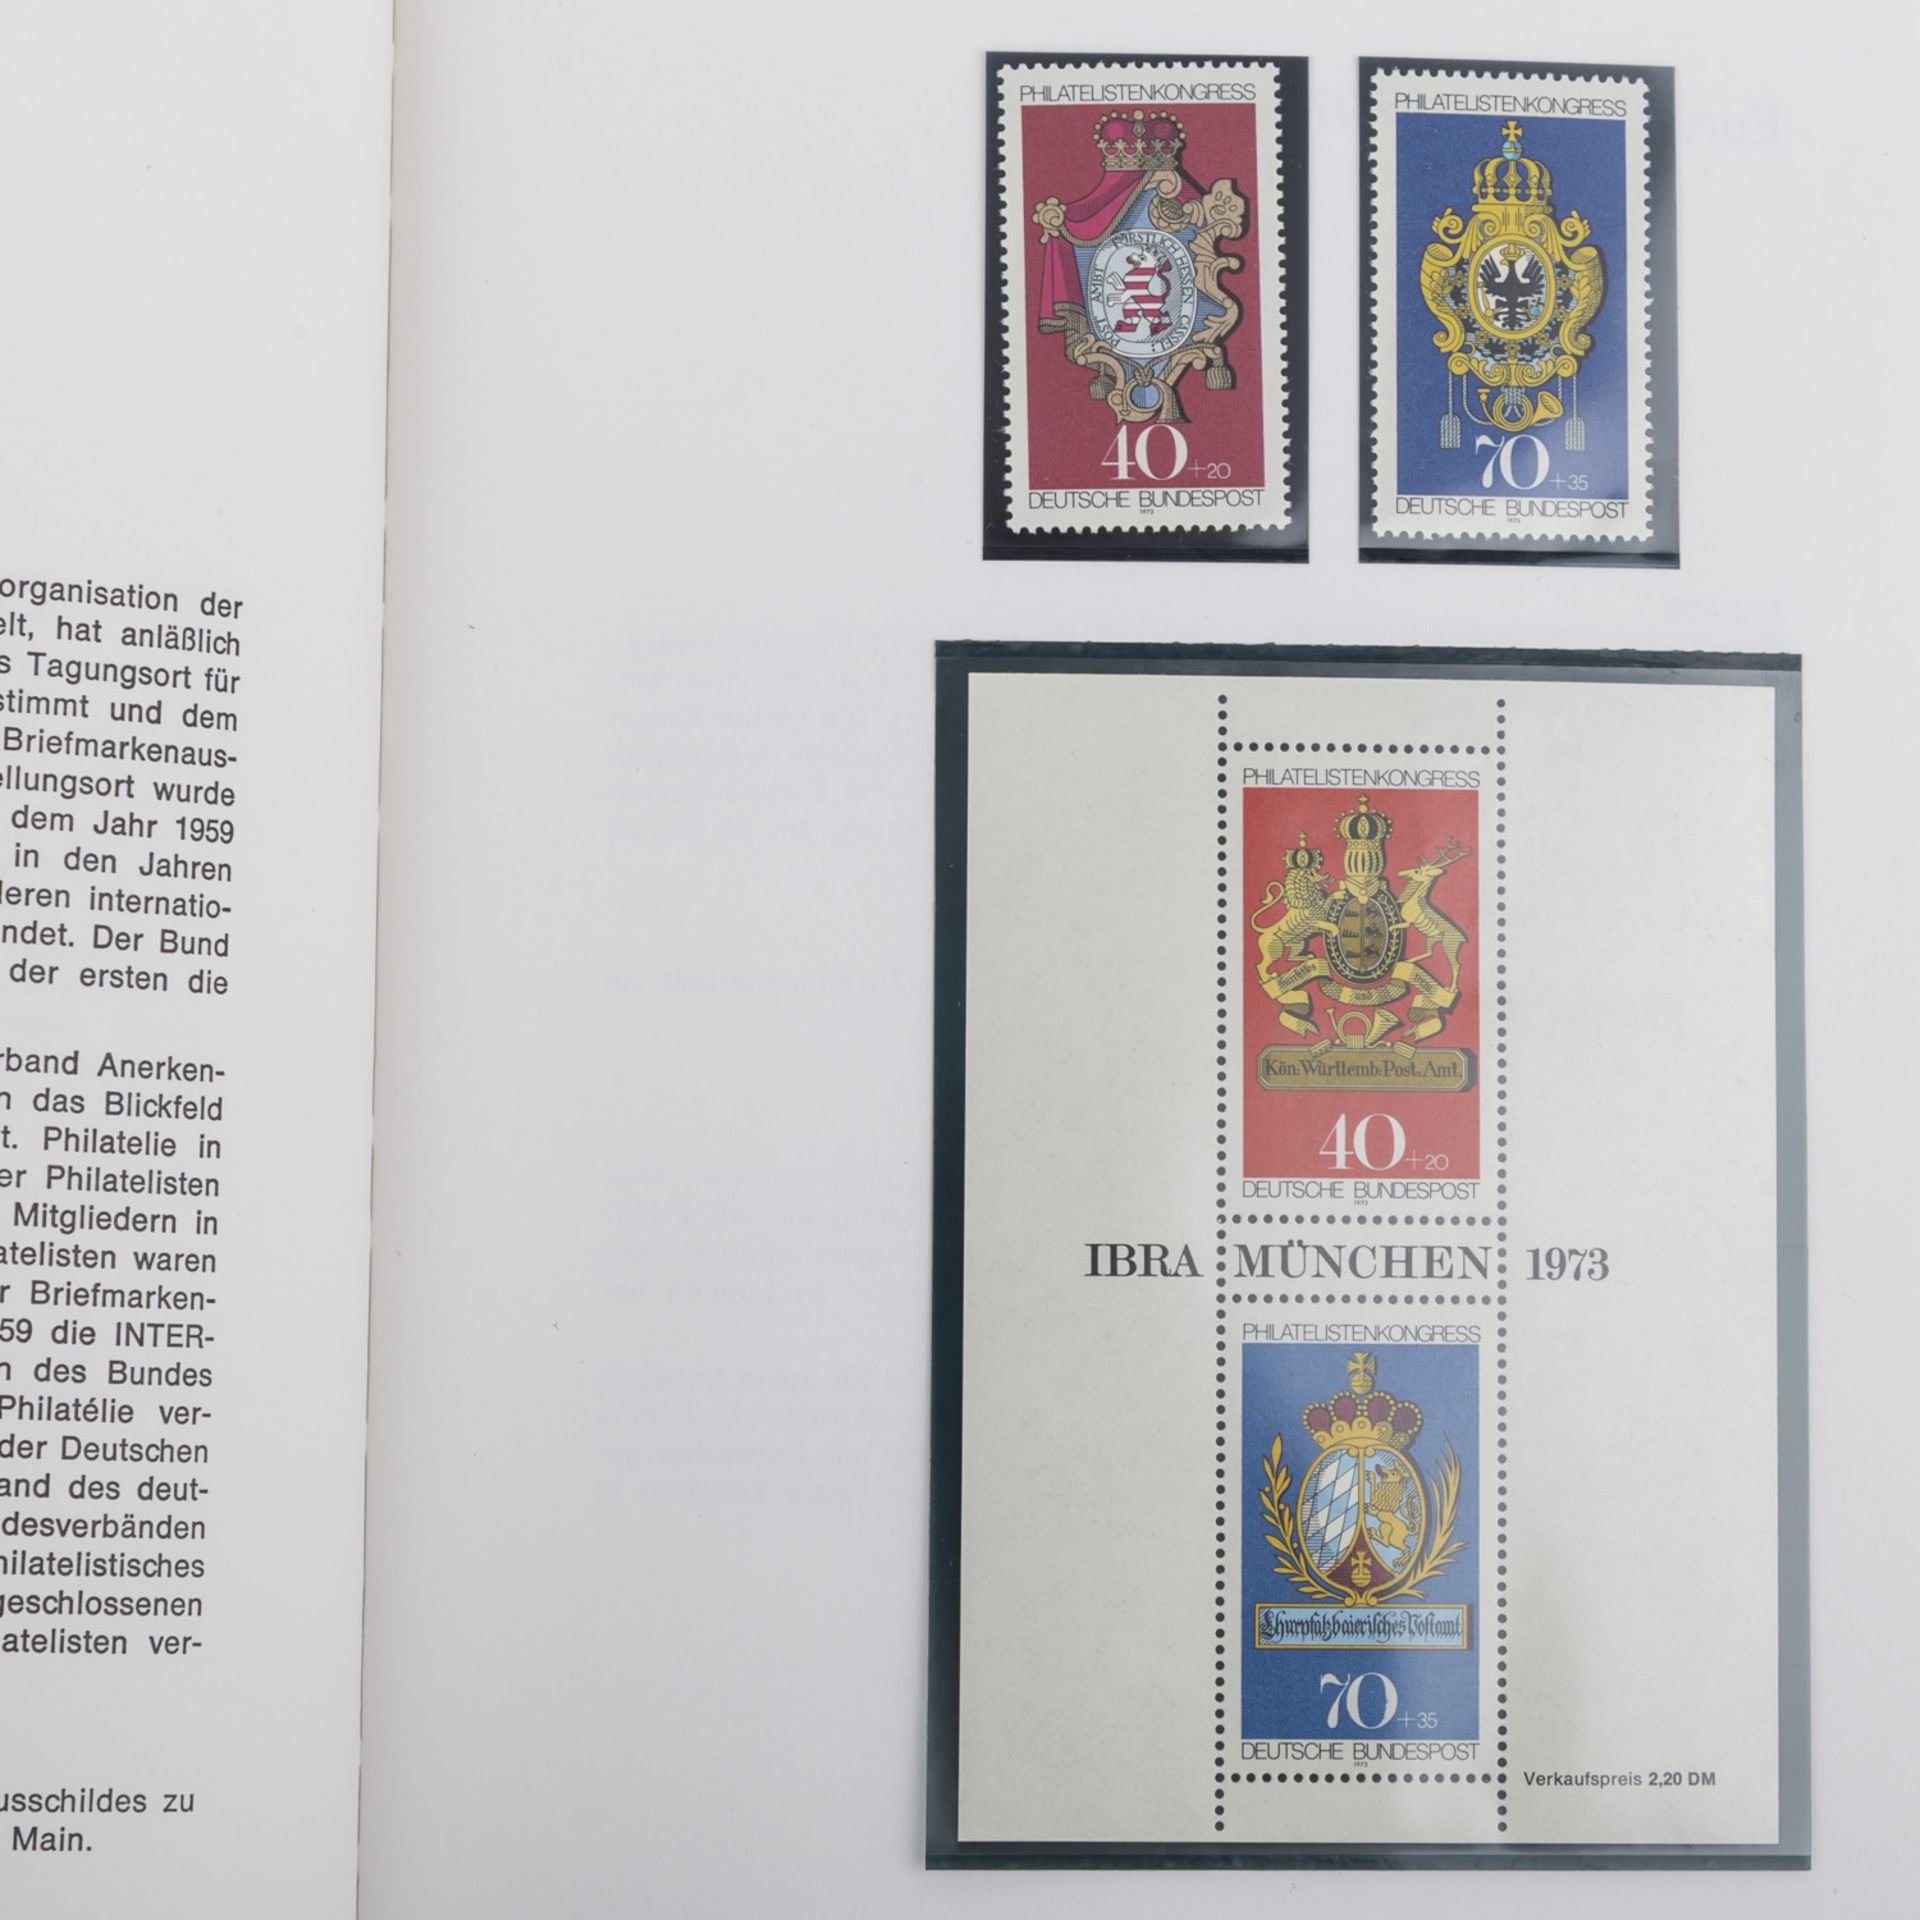 Jahrbuch 1973 - Das erste der BRD!Gesucht und selten, mit Inhalt! Minimale Gebrauchsspuren.Book year - Bild 2 aus 4